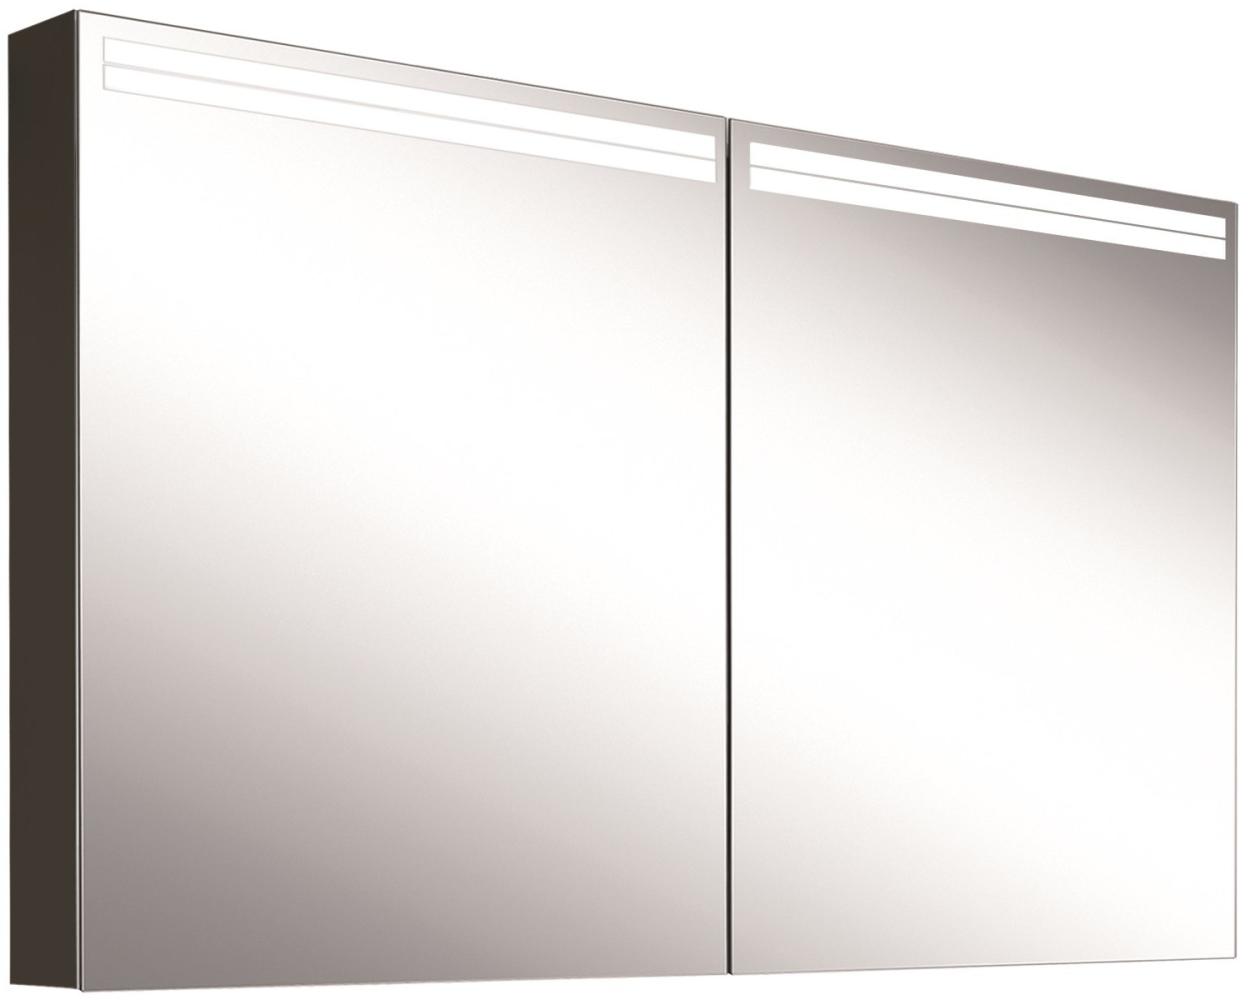 Schneider ARANGALINE LED Lichtspiegelschrank, 2 Doppelspiegeltüren, 130x70x12cm, 160. 530. 02. 41, Ausführung: EU-Norm/Korpus schwarz matt - 160. 530. 02. 41 Bild 1